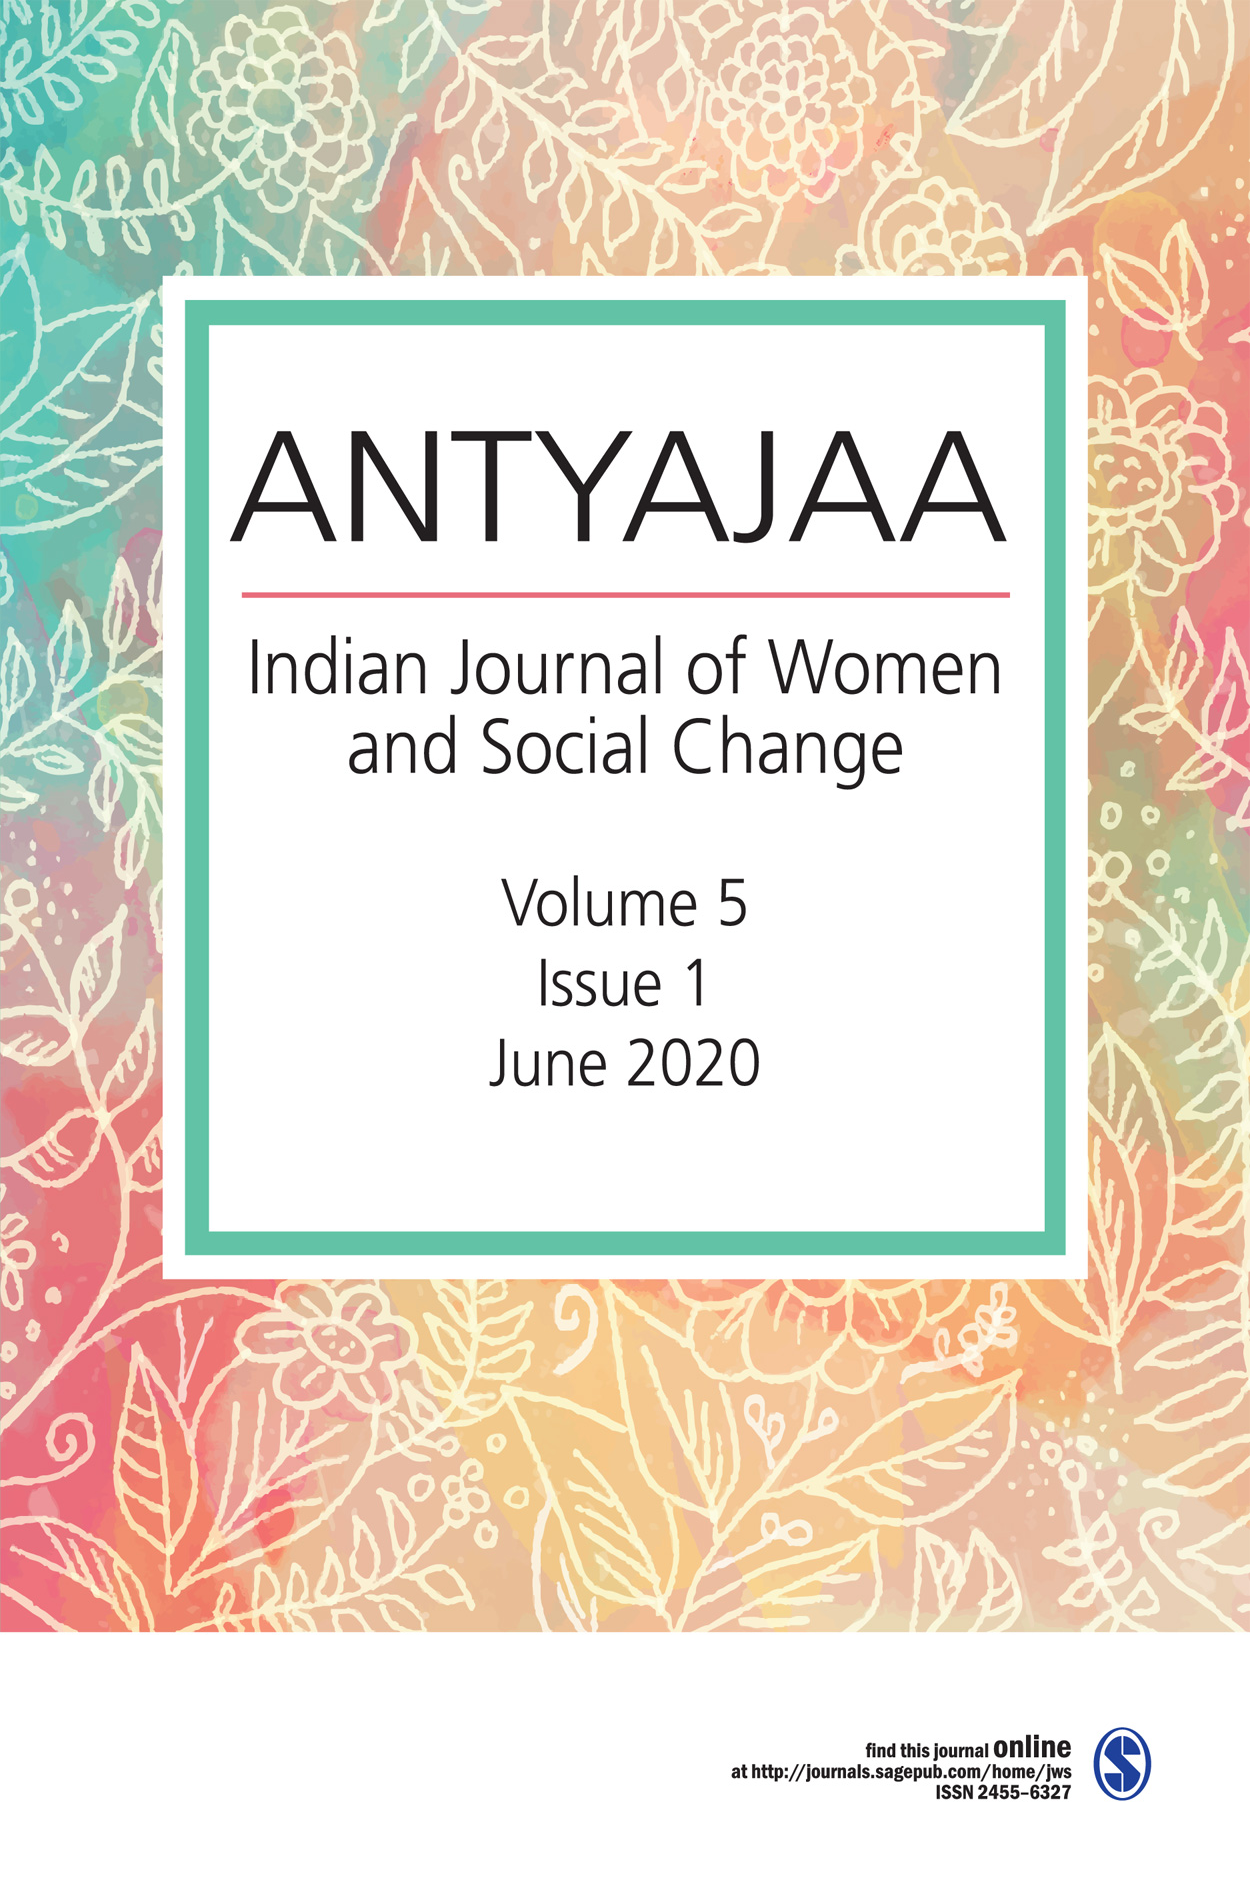 ANTYAJAA: Indian journal of Women and Social Change